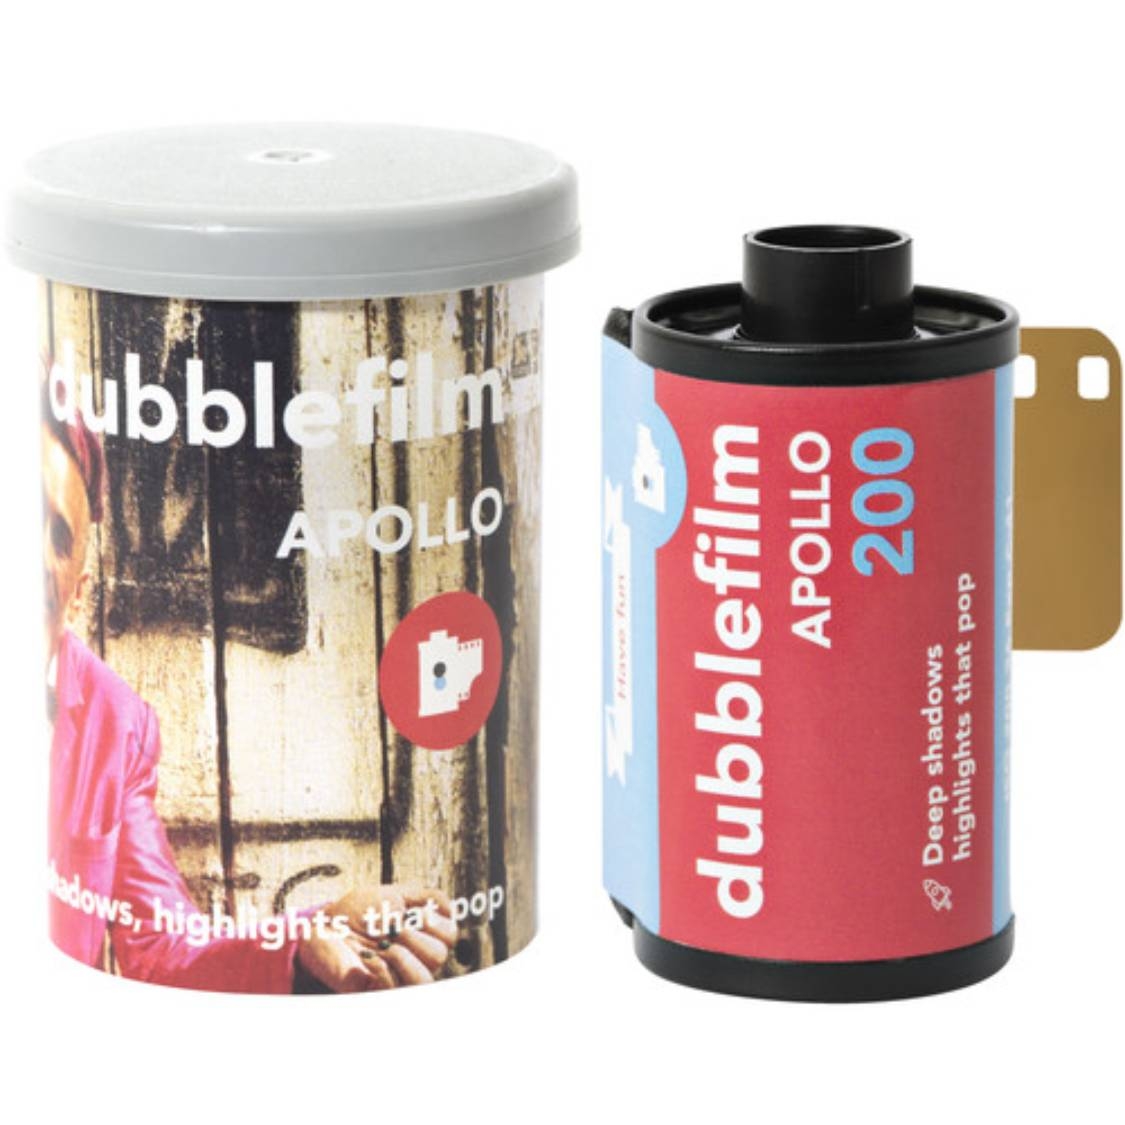 Dubble film Apollo 200 Color Negative Film (35mm Roll Film, 36 Exposures)